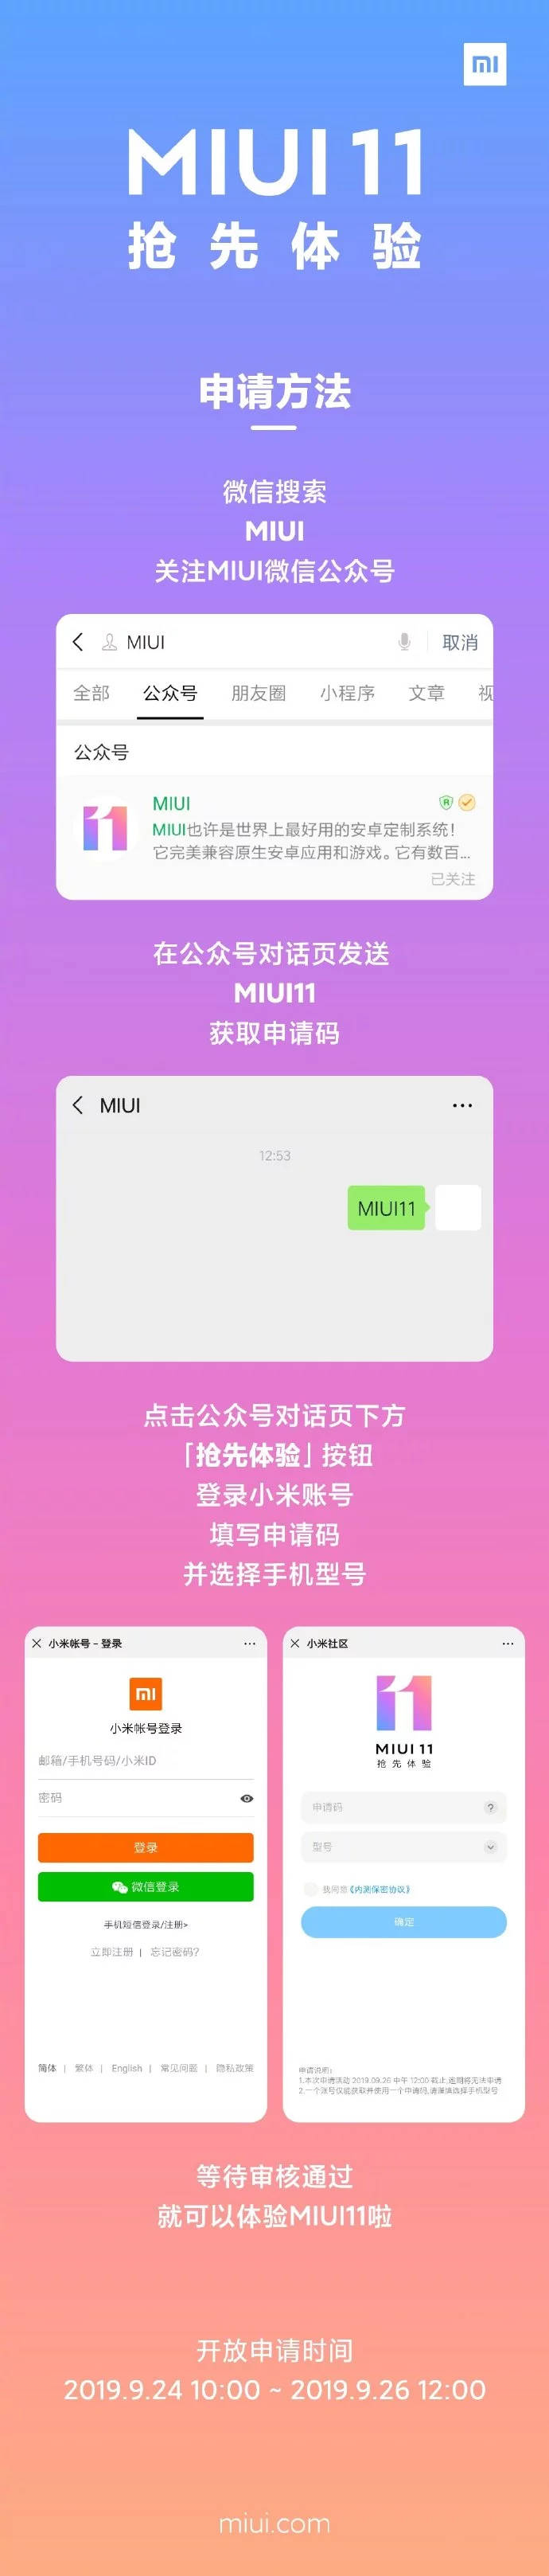 MIUI 11 Global beta kiedy premiera jakie smartfony Xiaomi Redmi co nowego funkcje